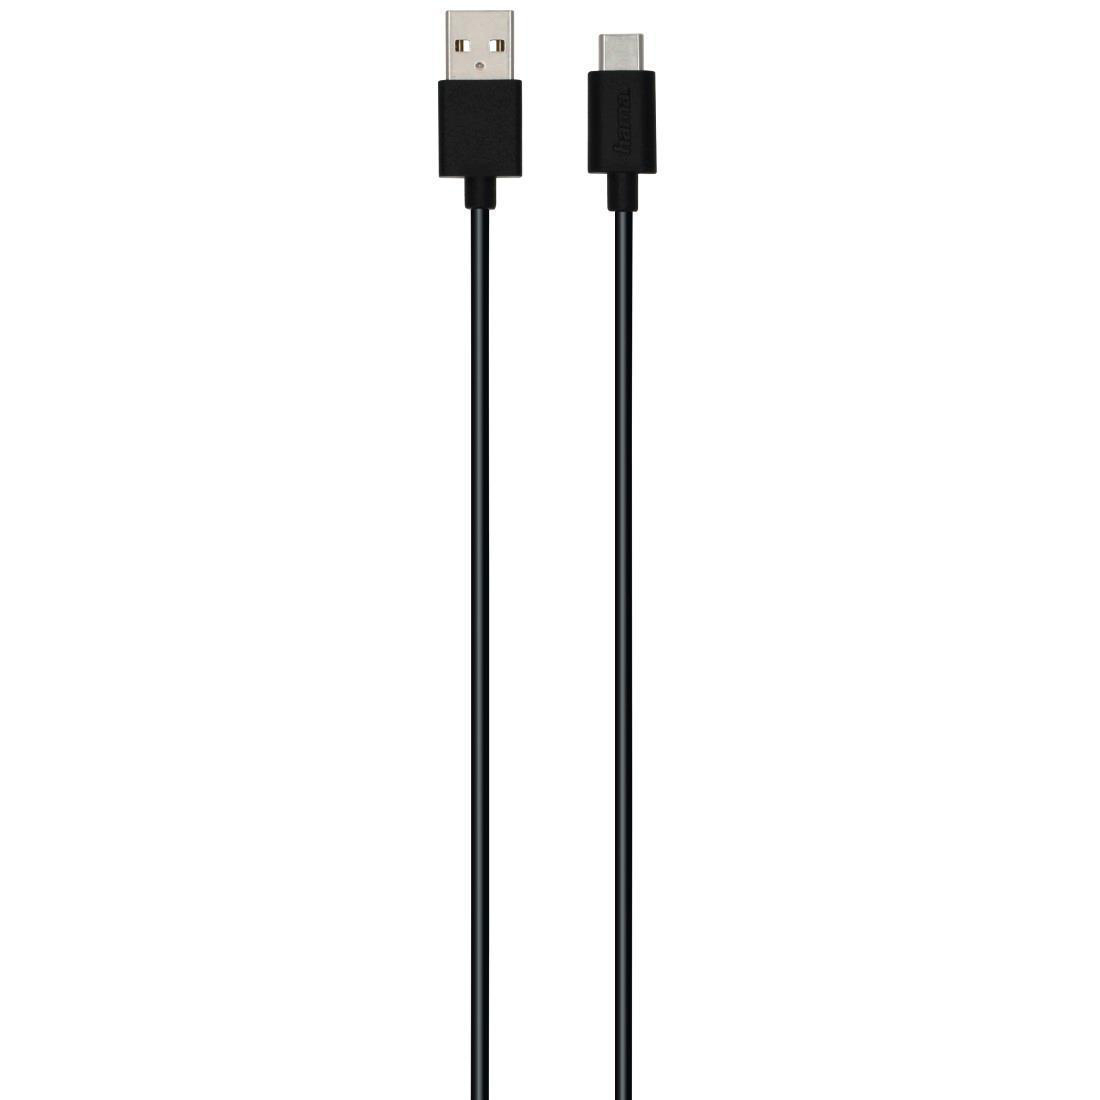 HAMA Sortiertes USB-A auf 0,75 Ladekabel, USB-C, Grün/Lila/Schwarz/Weiß m